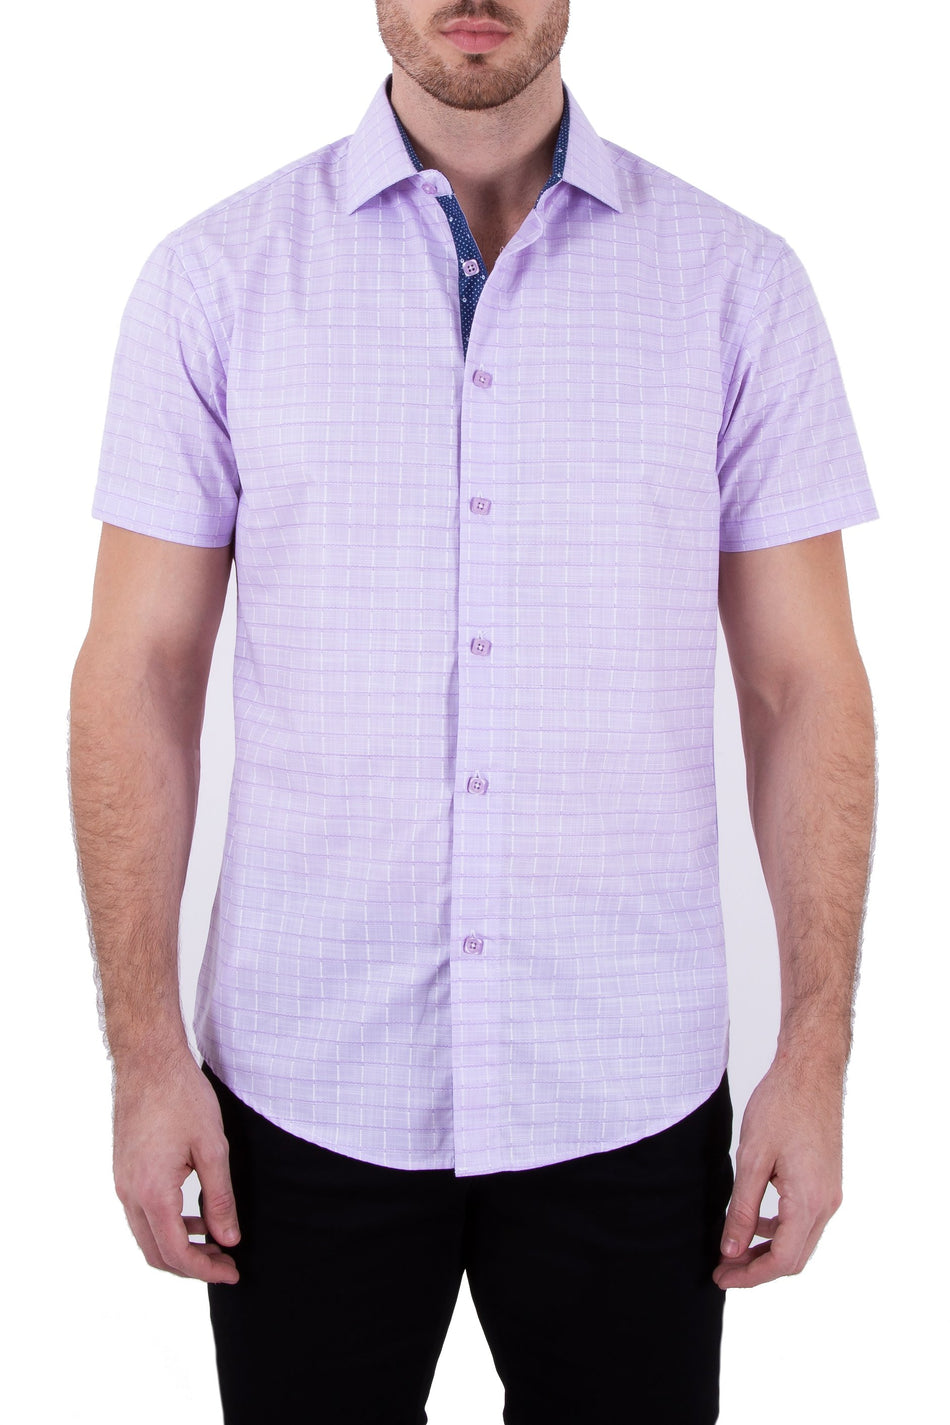 Window Pane Pattern Lilac Linen Button Up Short Sleeve Dress Shirt